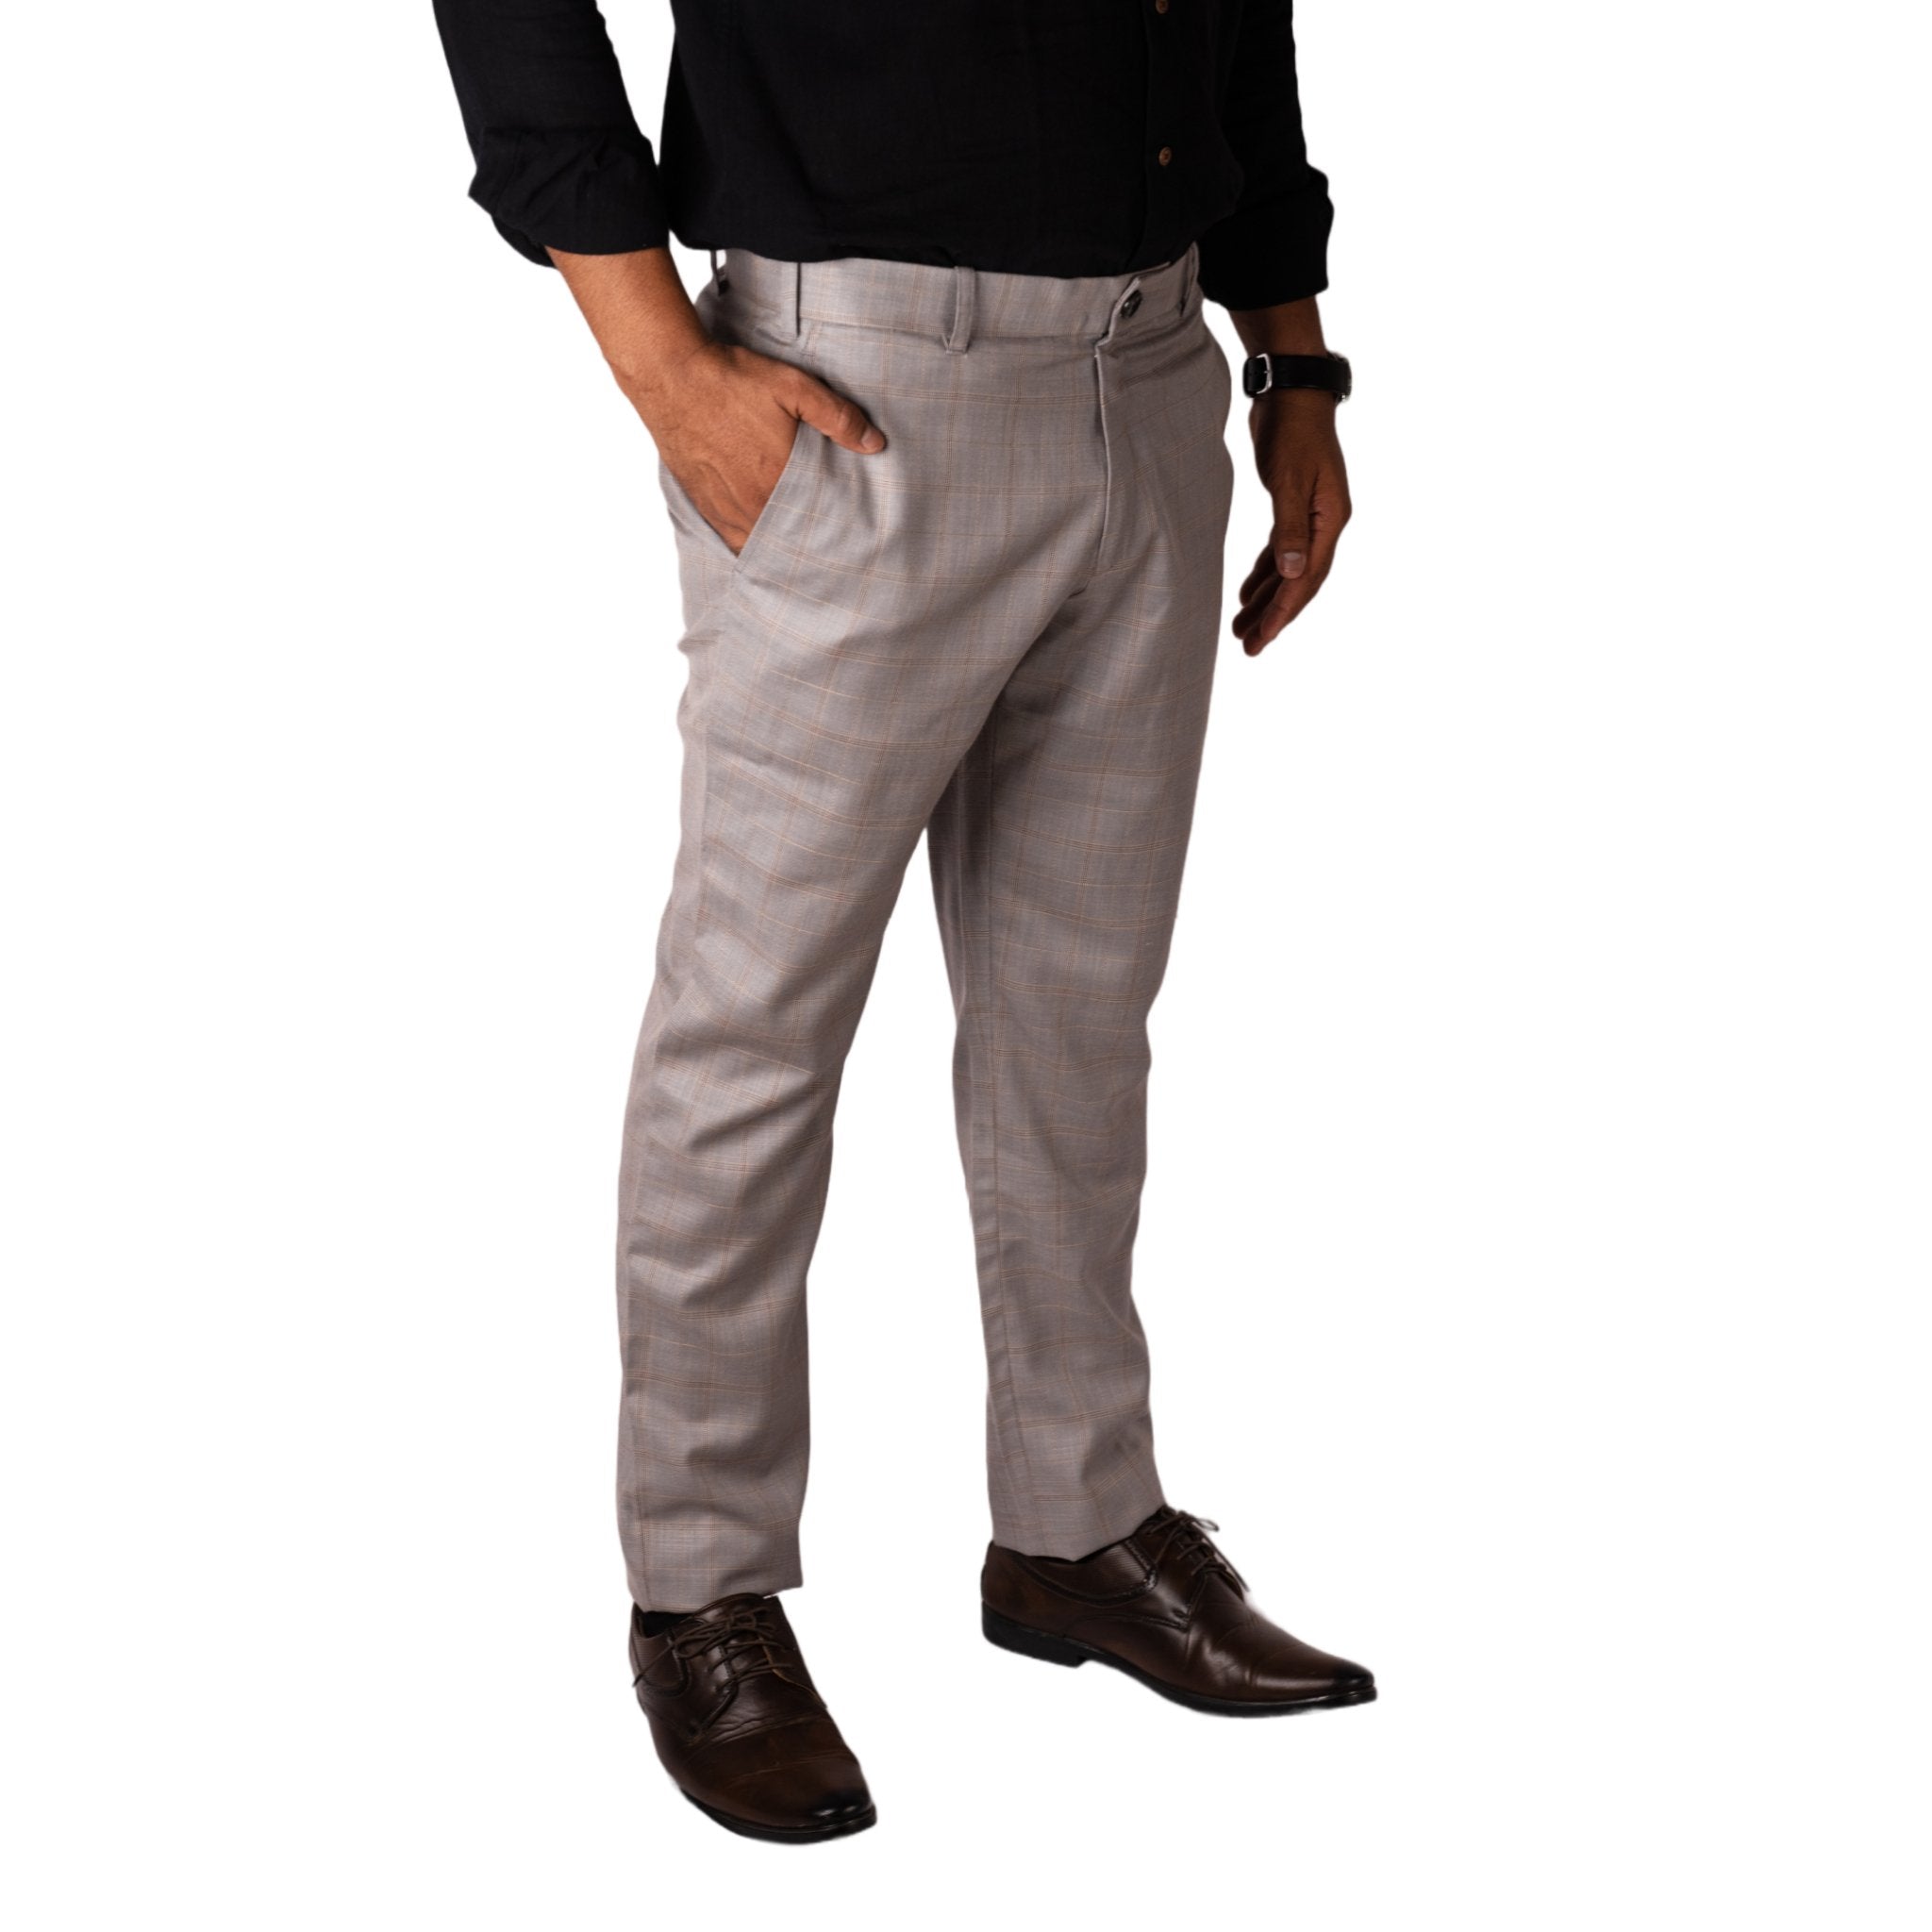 Grey color cotton pants for men - Men - 1761778902